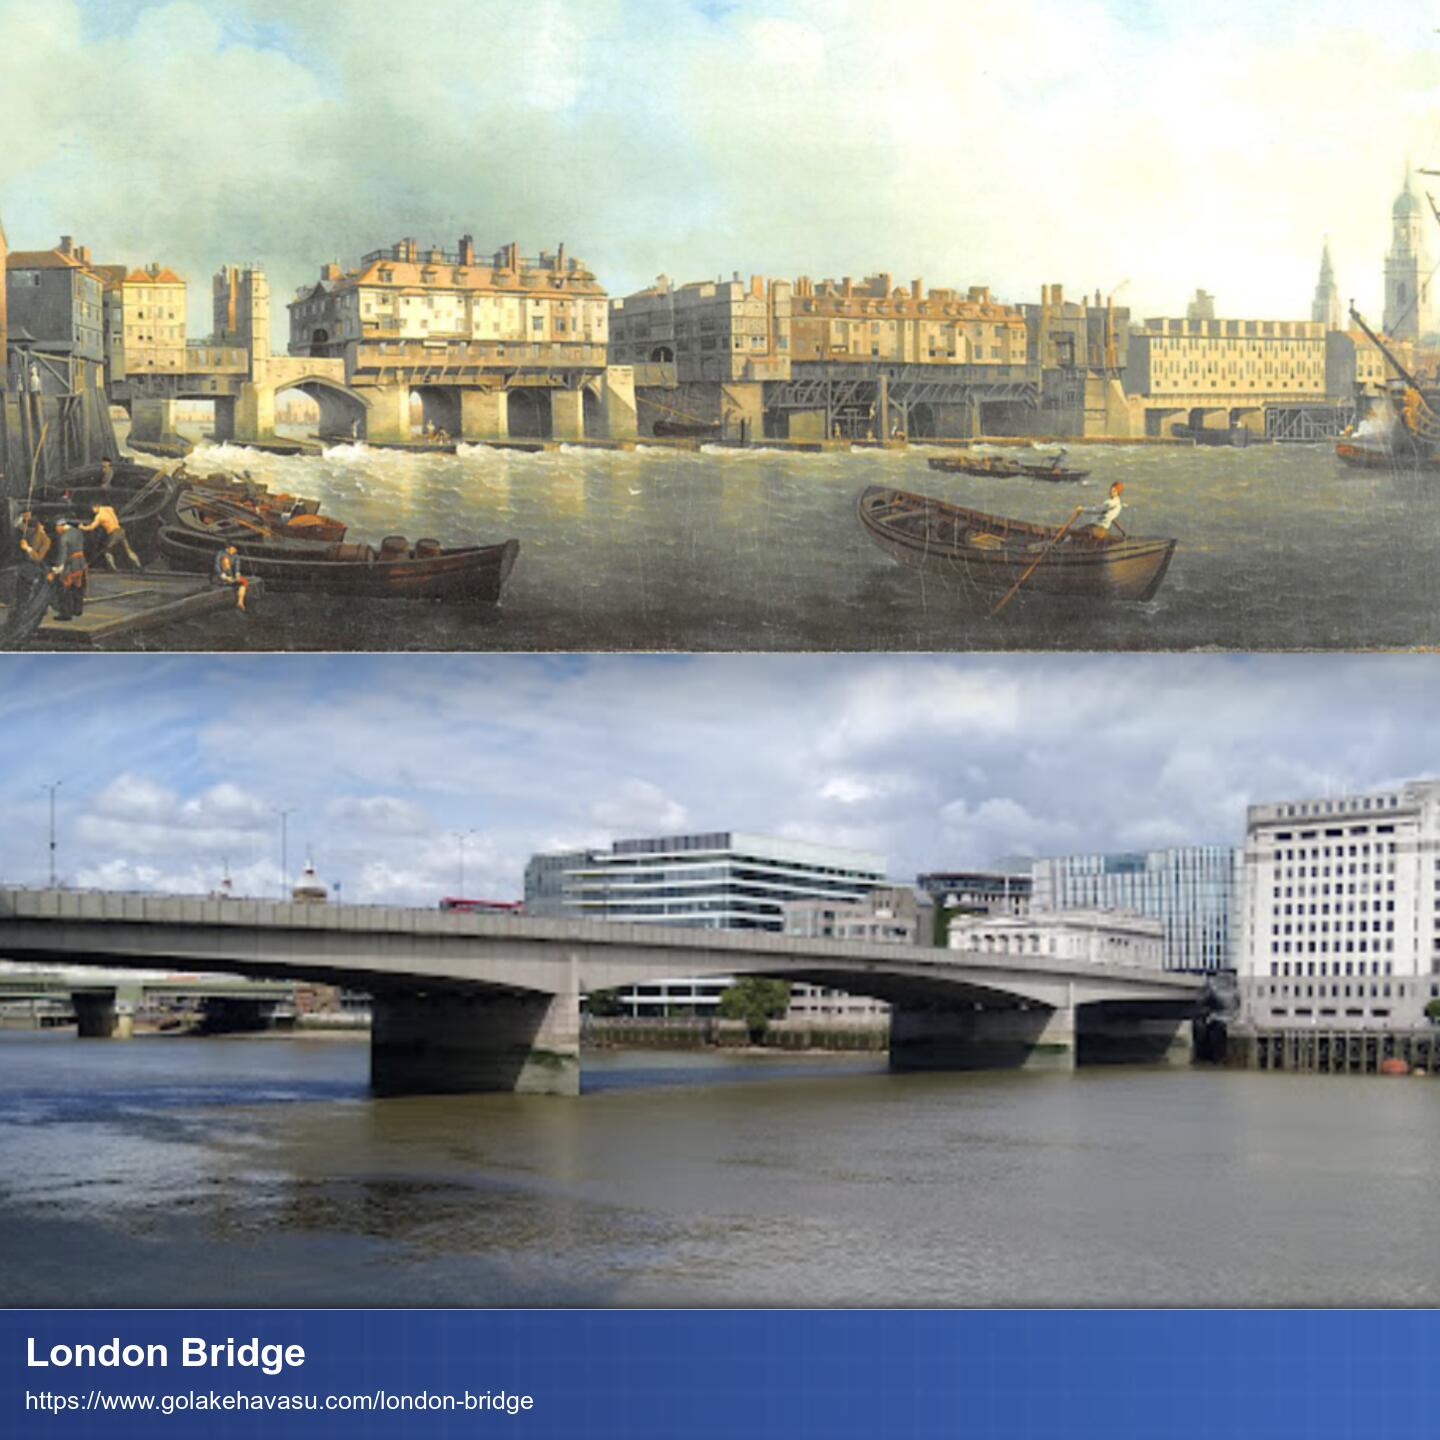 Oben: Zeichnung der Londong Bridge auf der große Wohnblöcke stehen und kleine Schiffe im Vordergrund rudern. Unten: Foto der langweiligen aktuellen Londonbridge die wirklich nur eine simple Straße bildet.